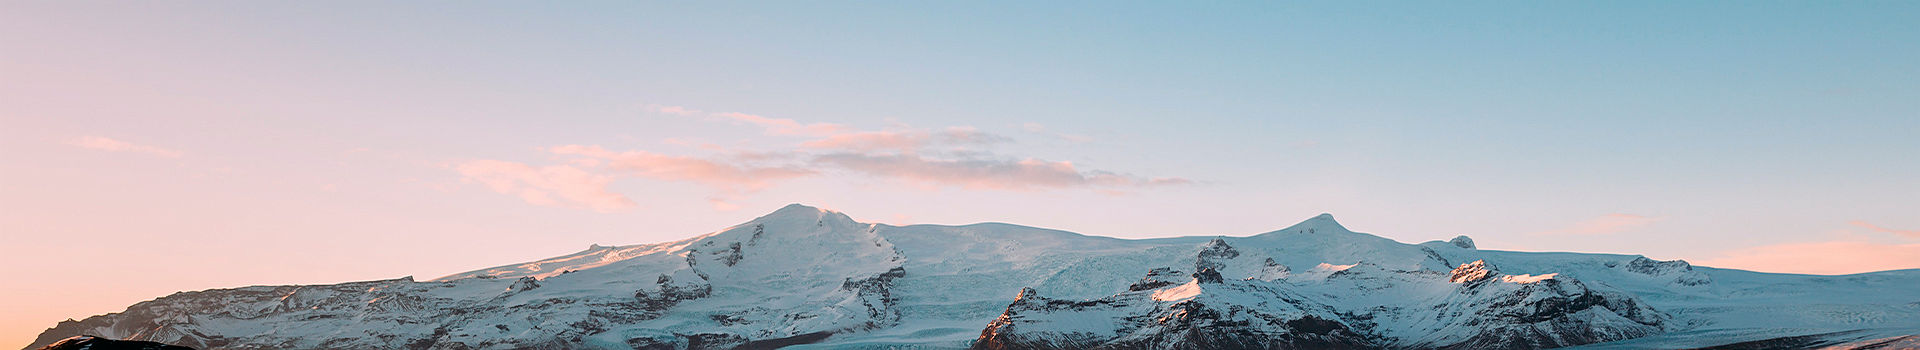 Pano - Lumière d'un hiver Islandais